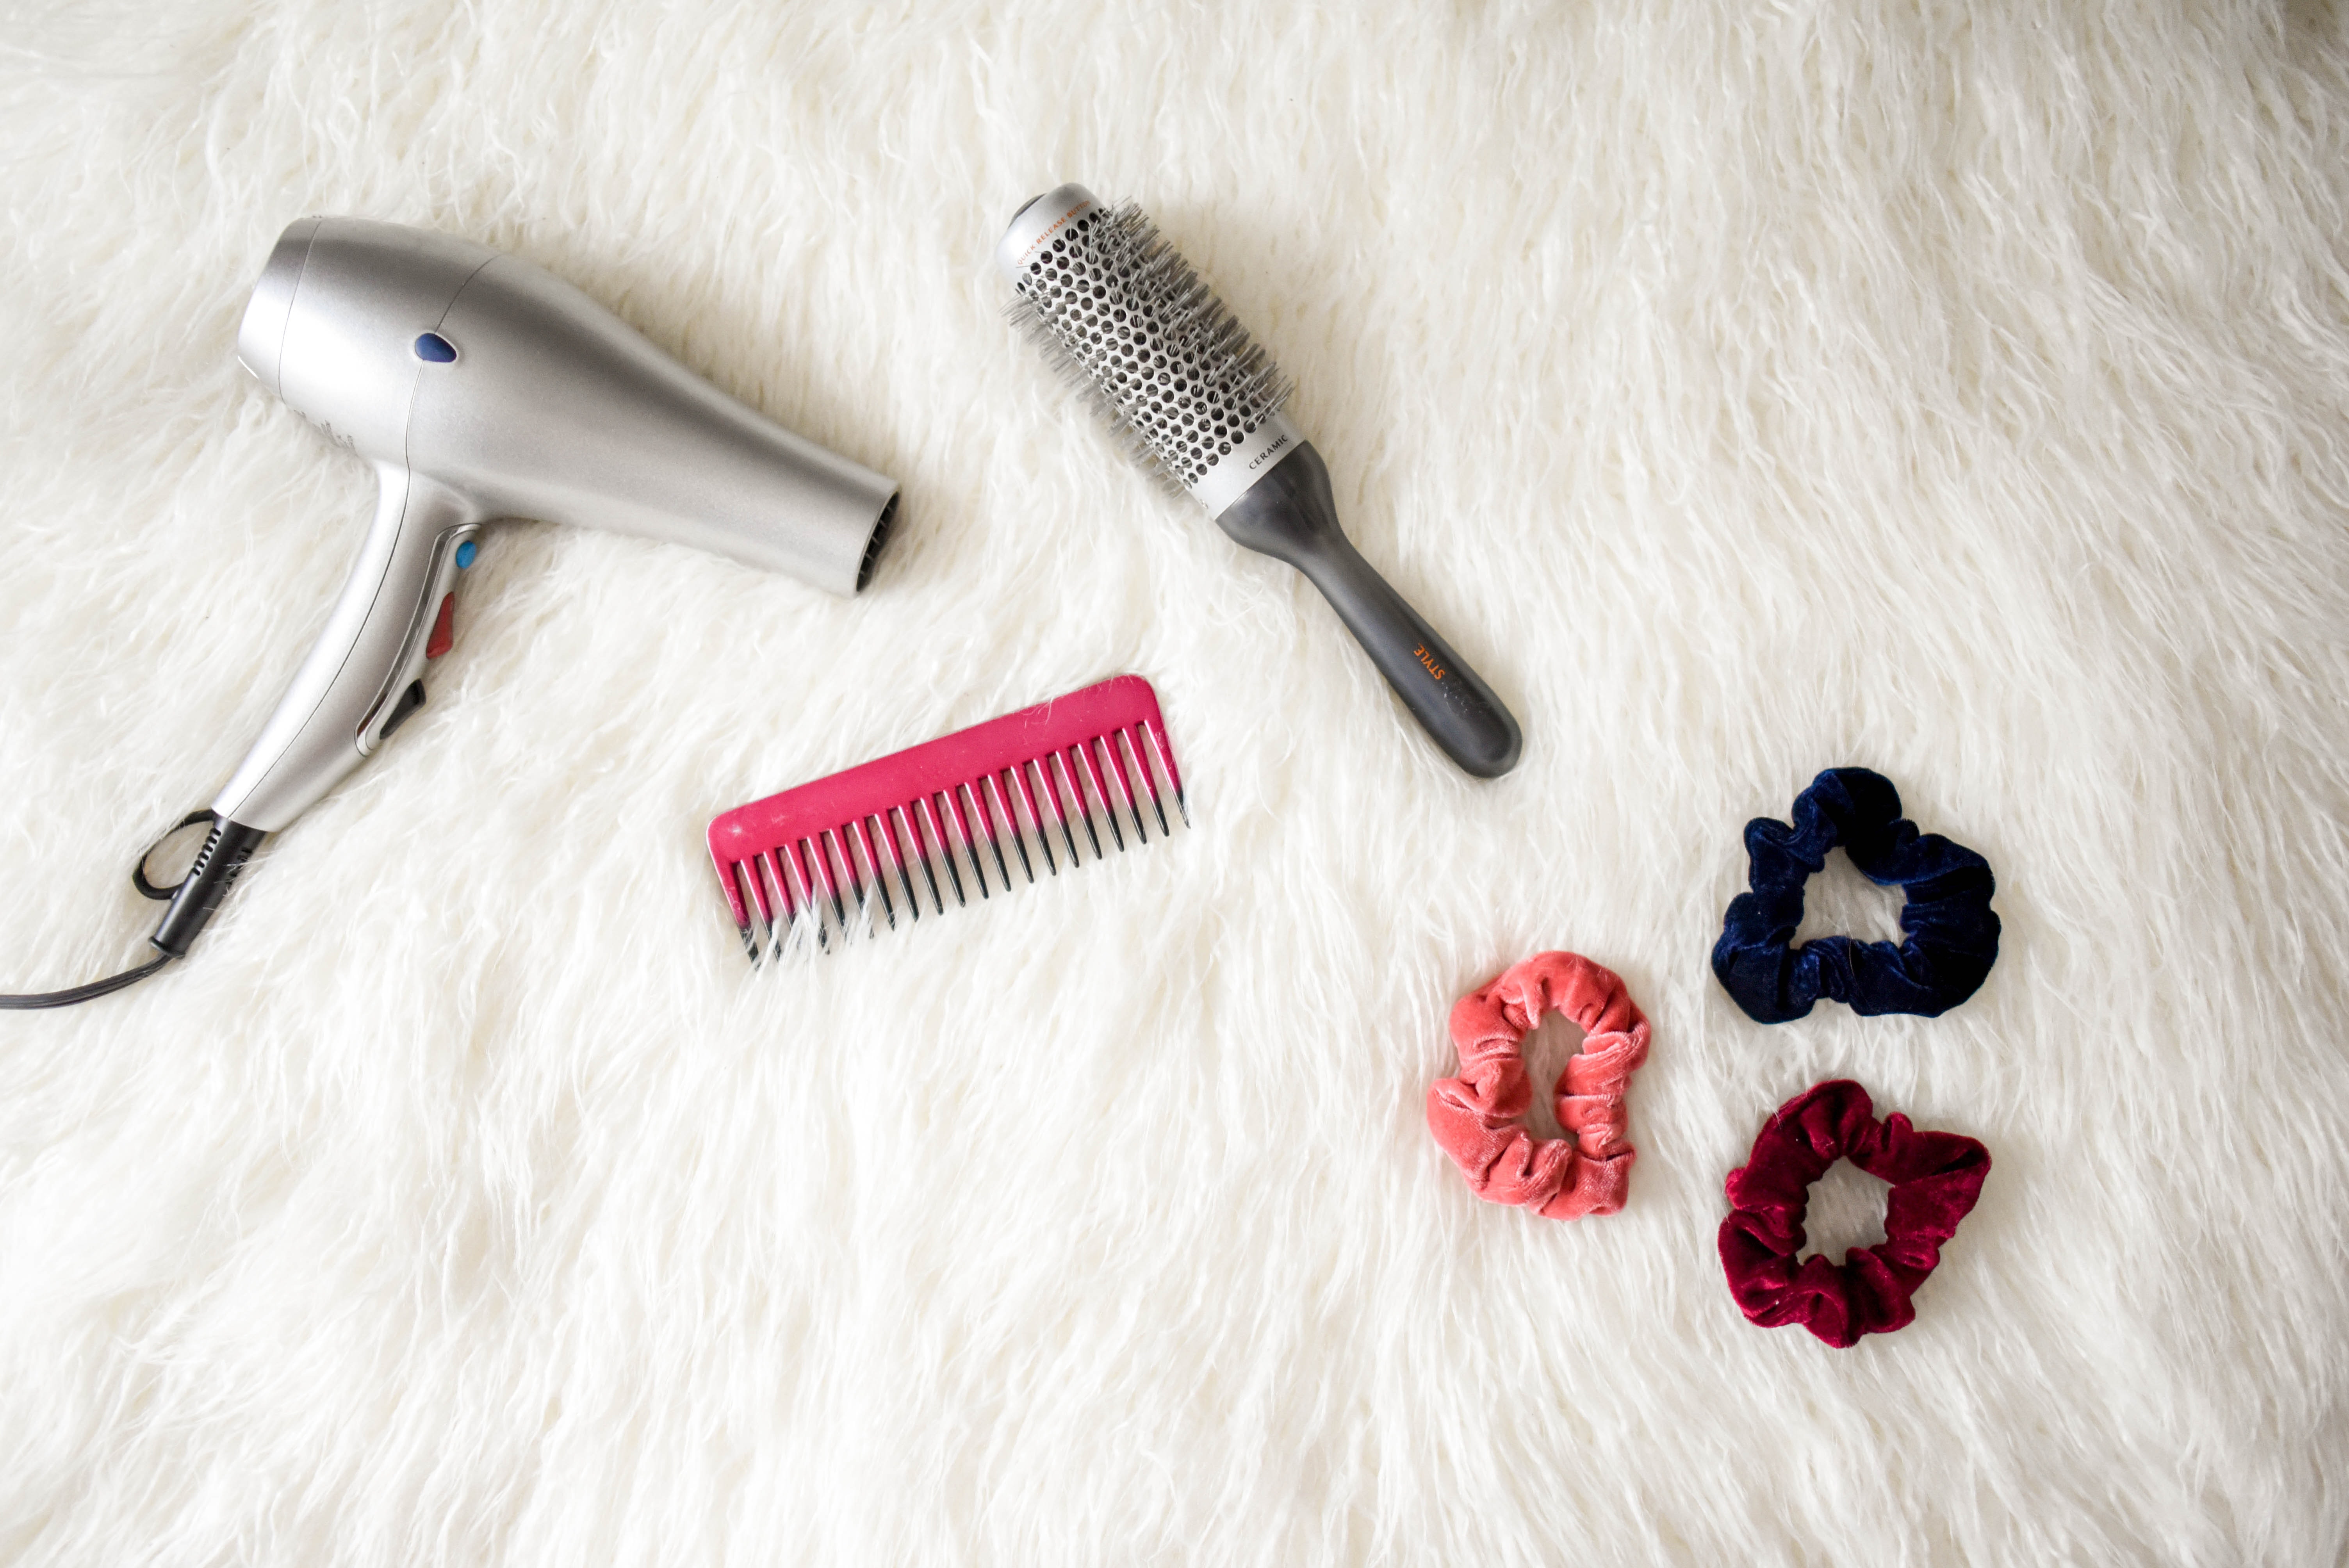 Tips for Preventing Hair Loss